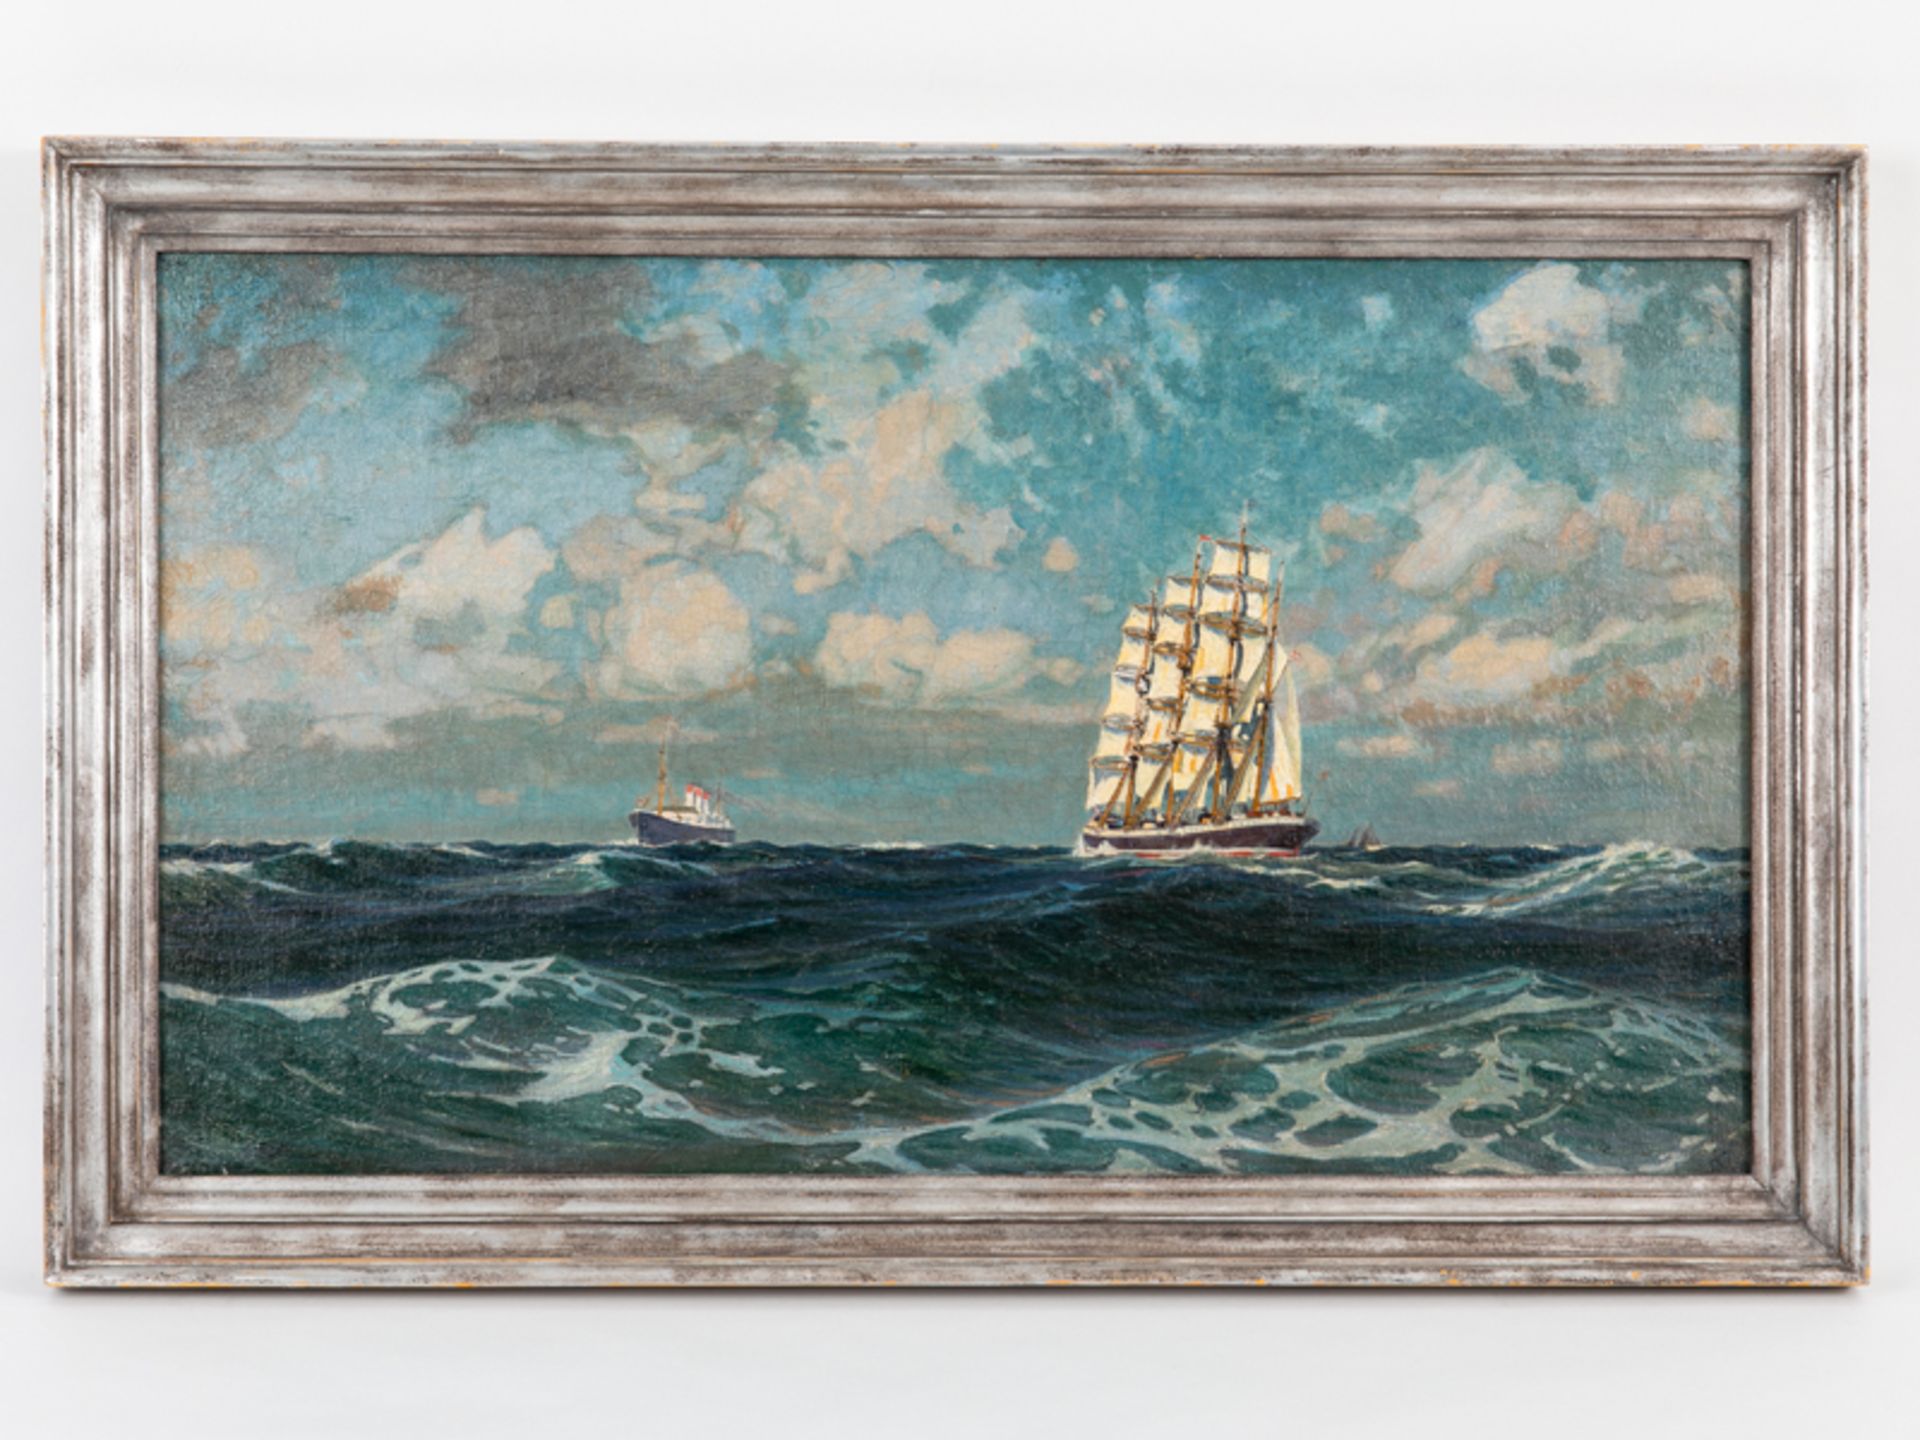 Marinemaler, 1. Hälfte 20. Jh. Öl auf Leinwand; Großsegler auf hoher See, begleitet im Hinte